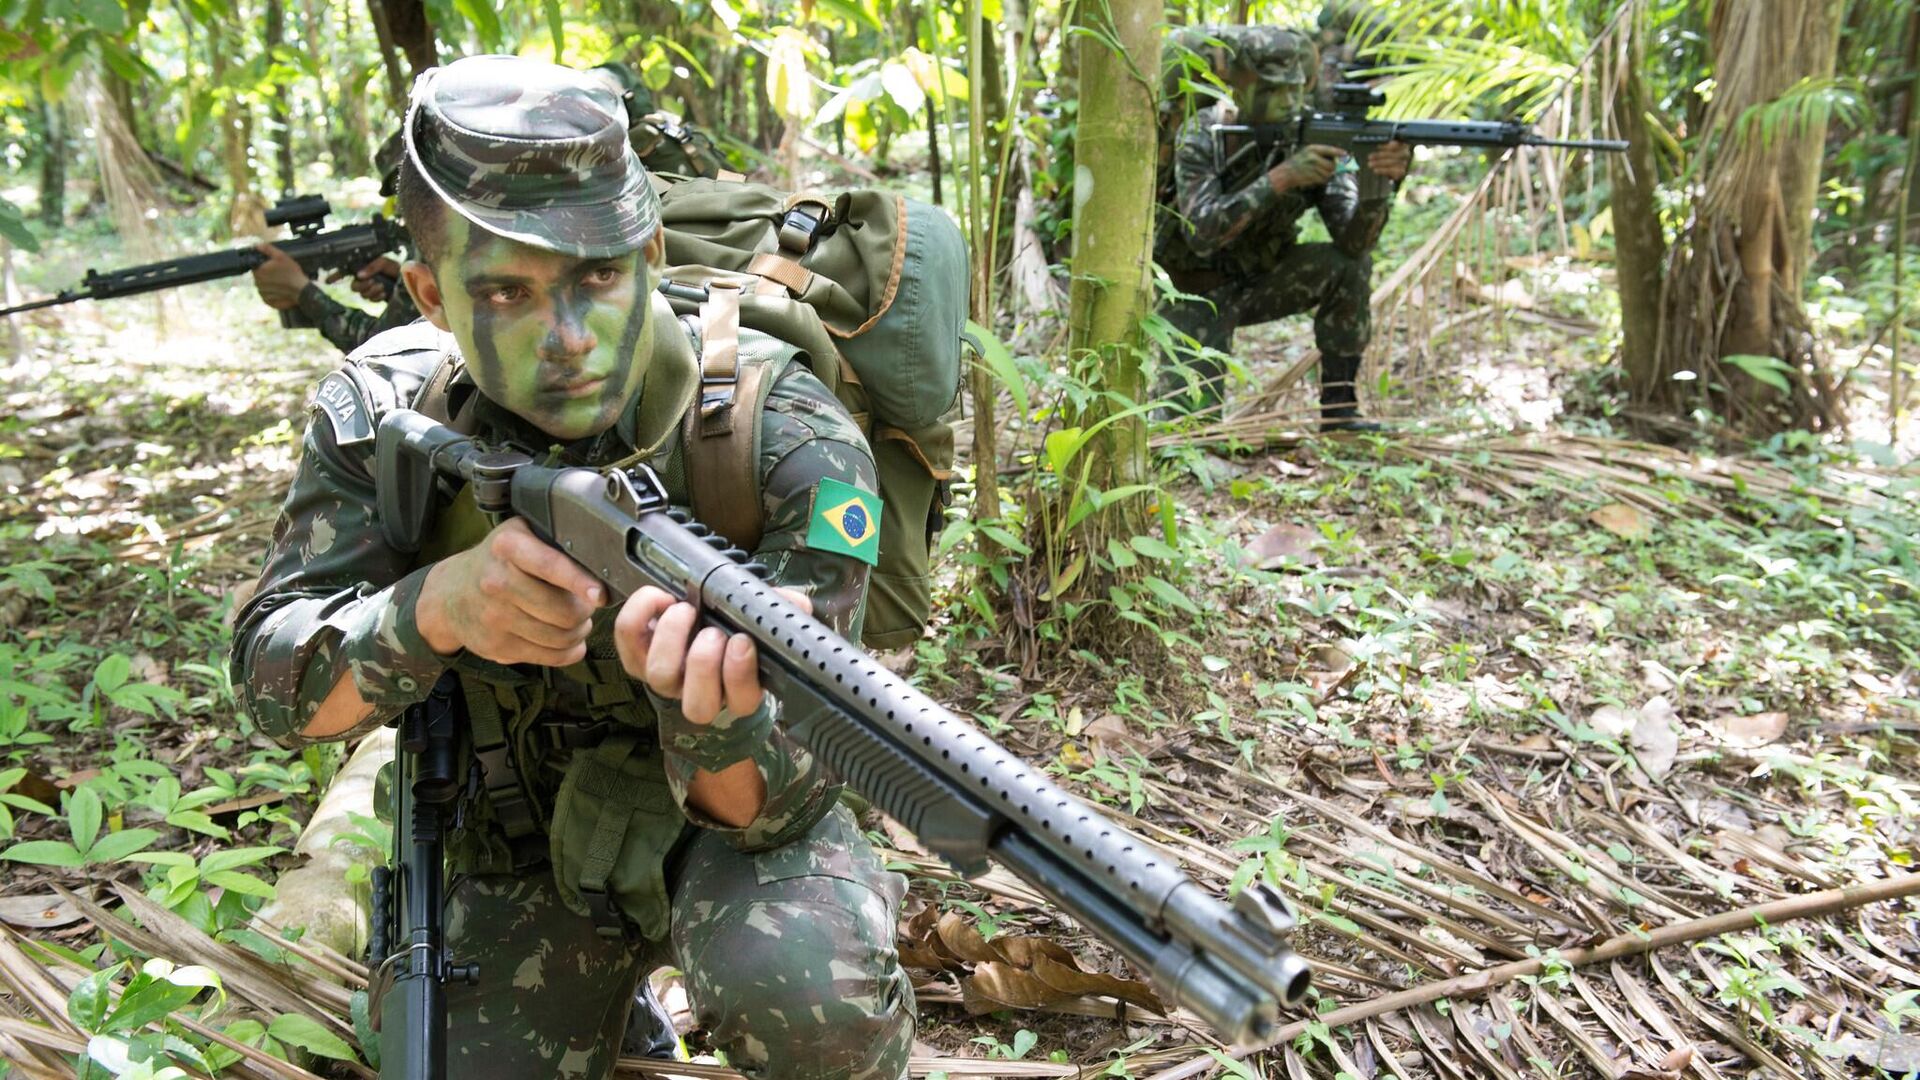 Militares americanos na Amazônia causam discórdia no Exército brasileiro